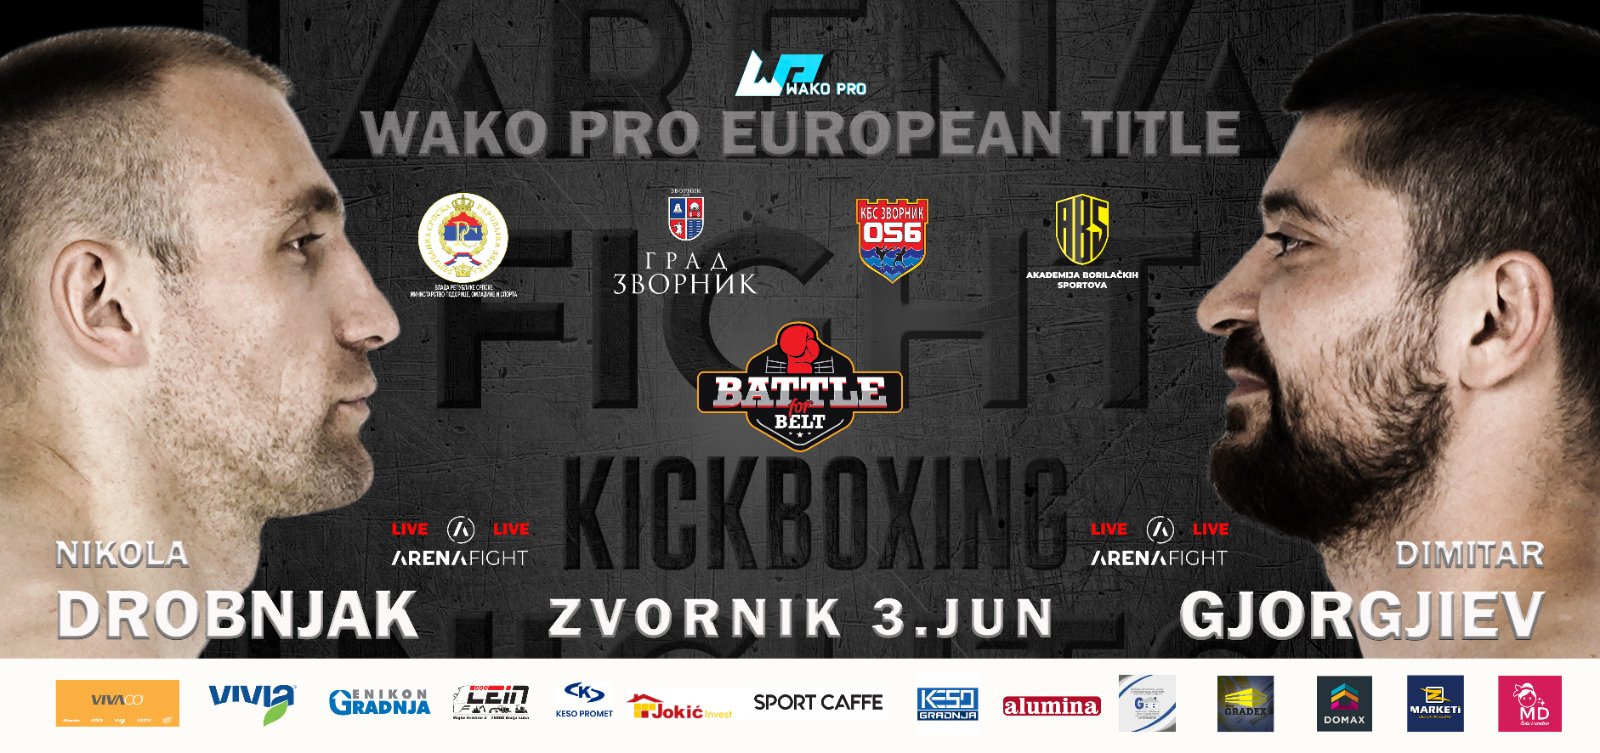 Nikola Drobnjak se bori za titulu kik-boks prvaka Evrope